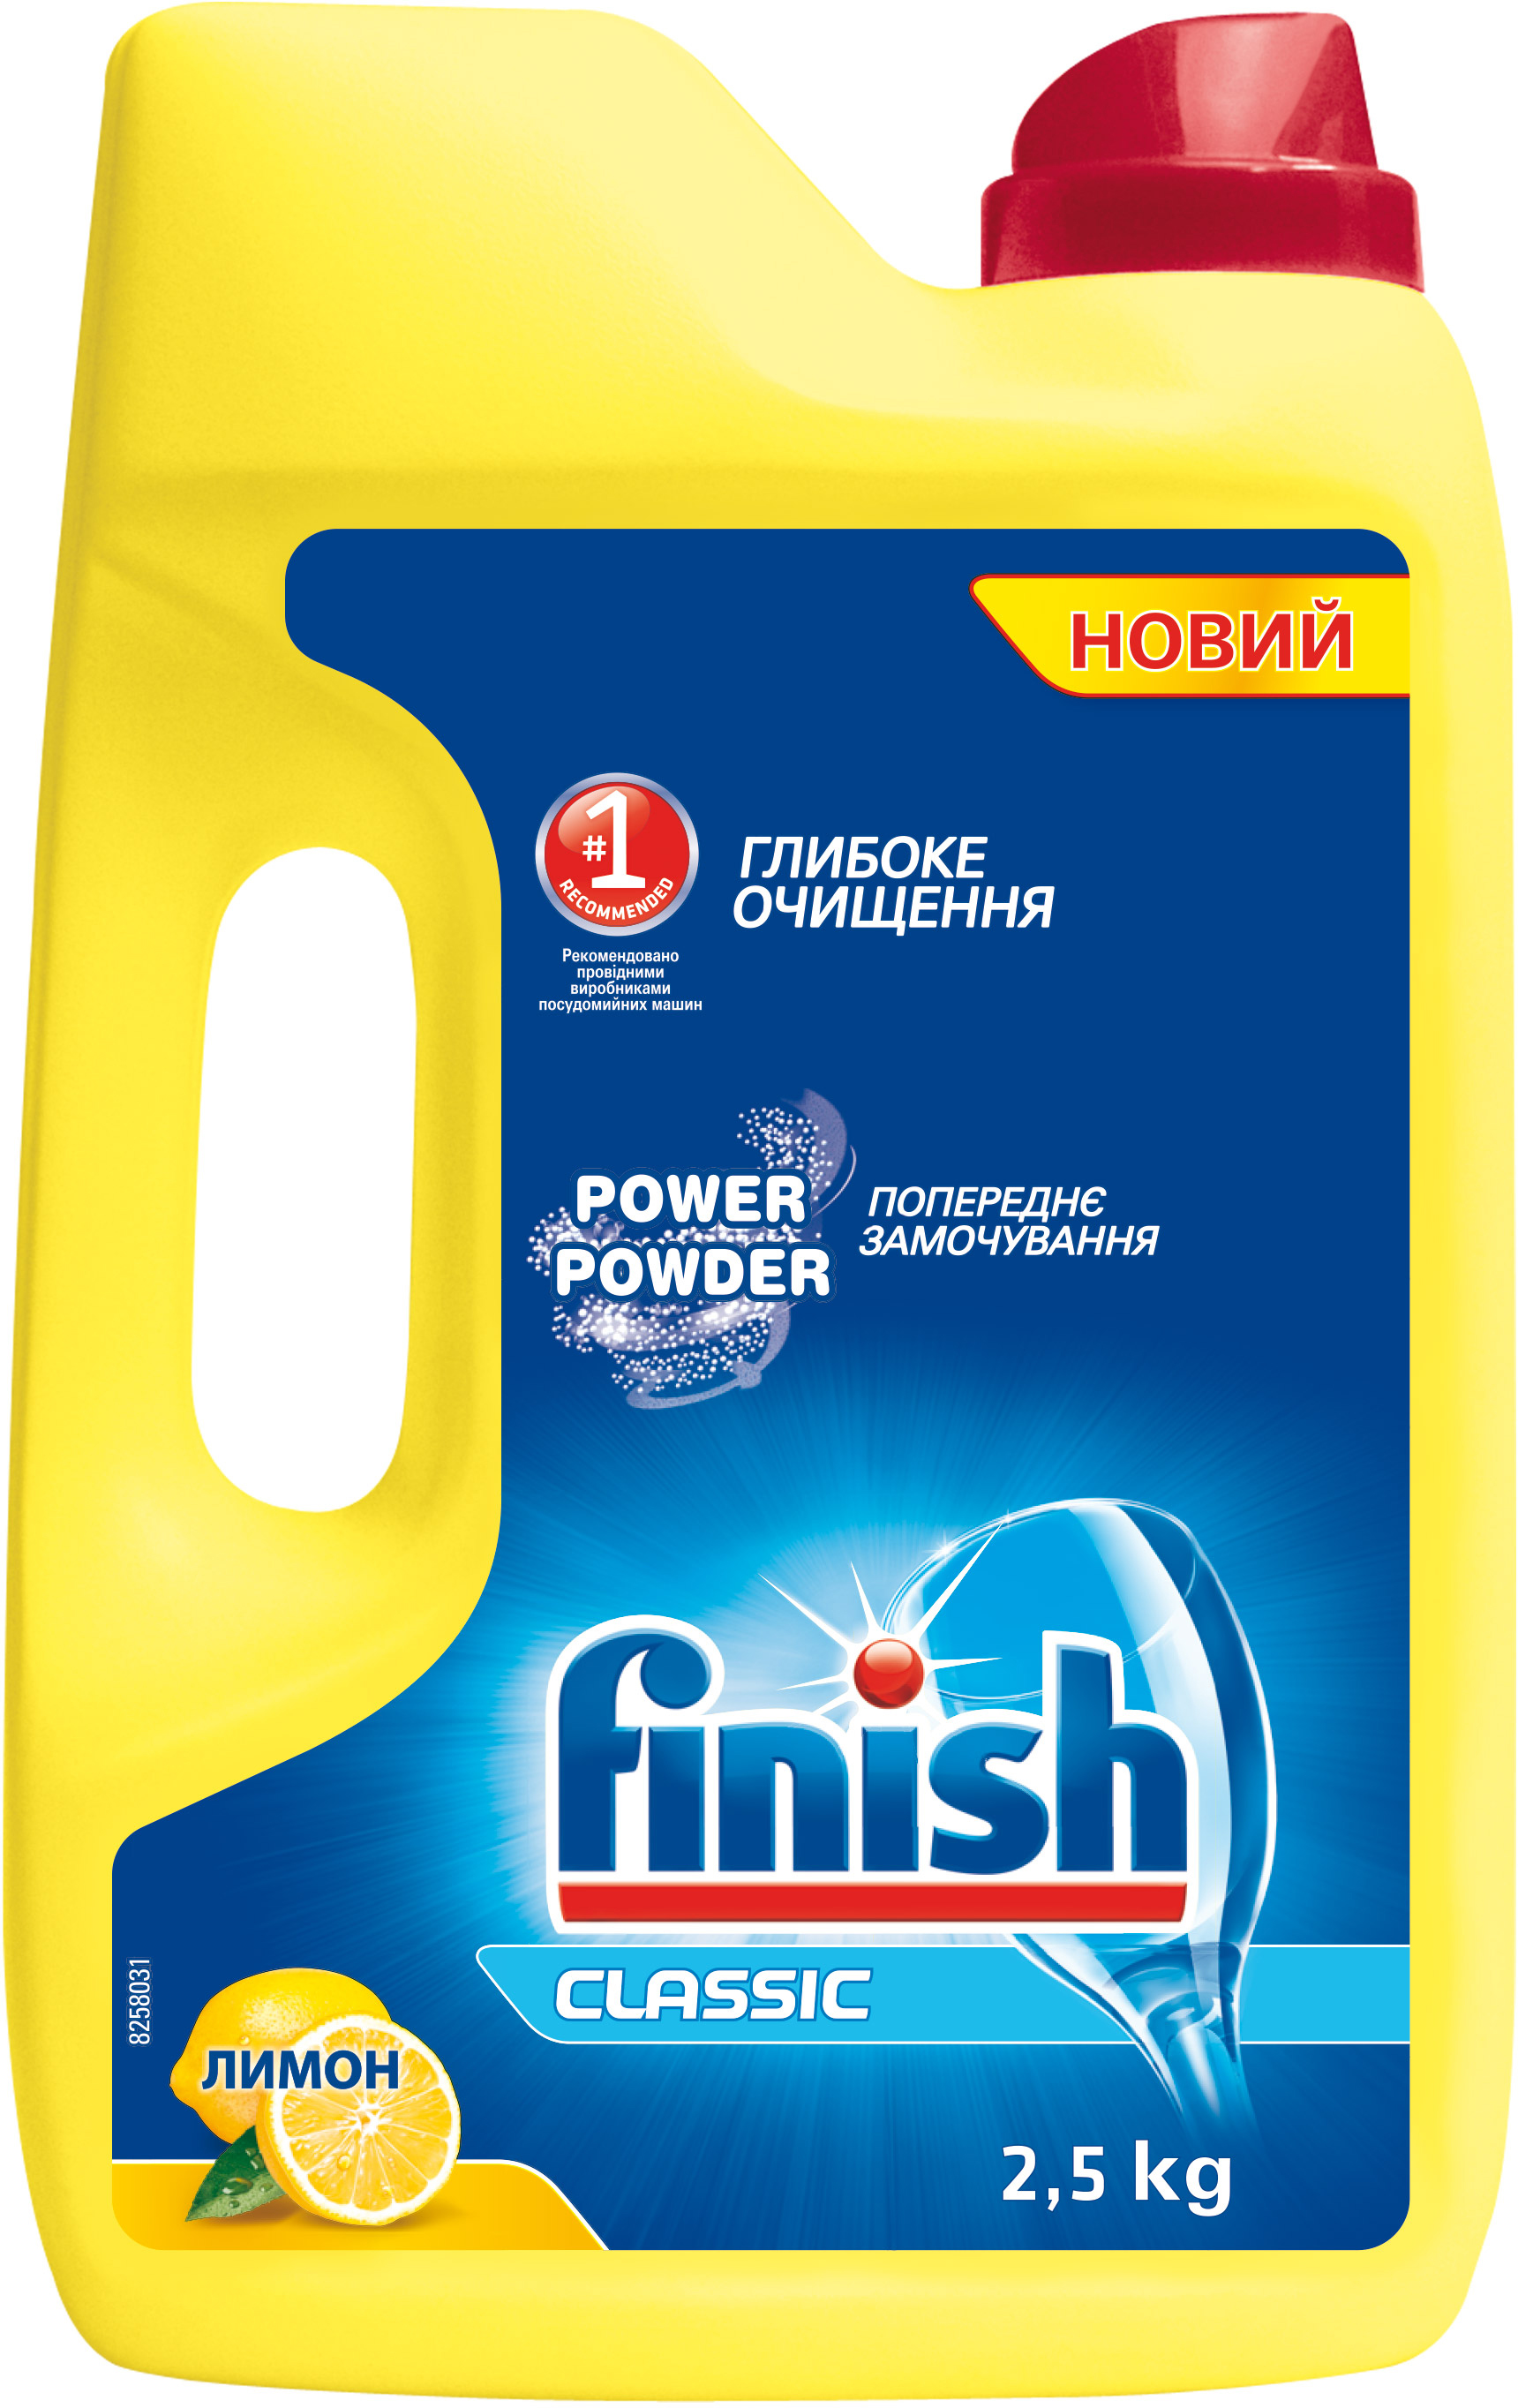  для мытья посуды в посудомоечной машине FINISH Лимон 2.5 кг .